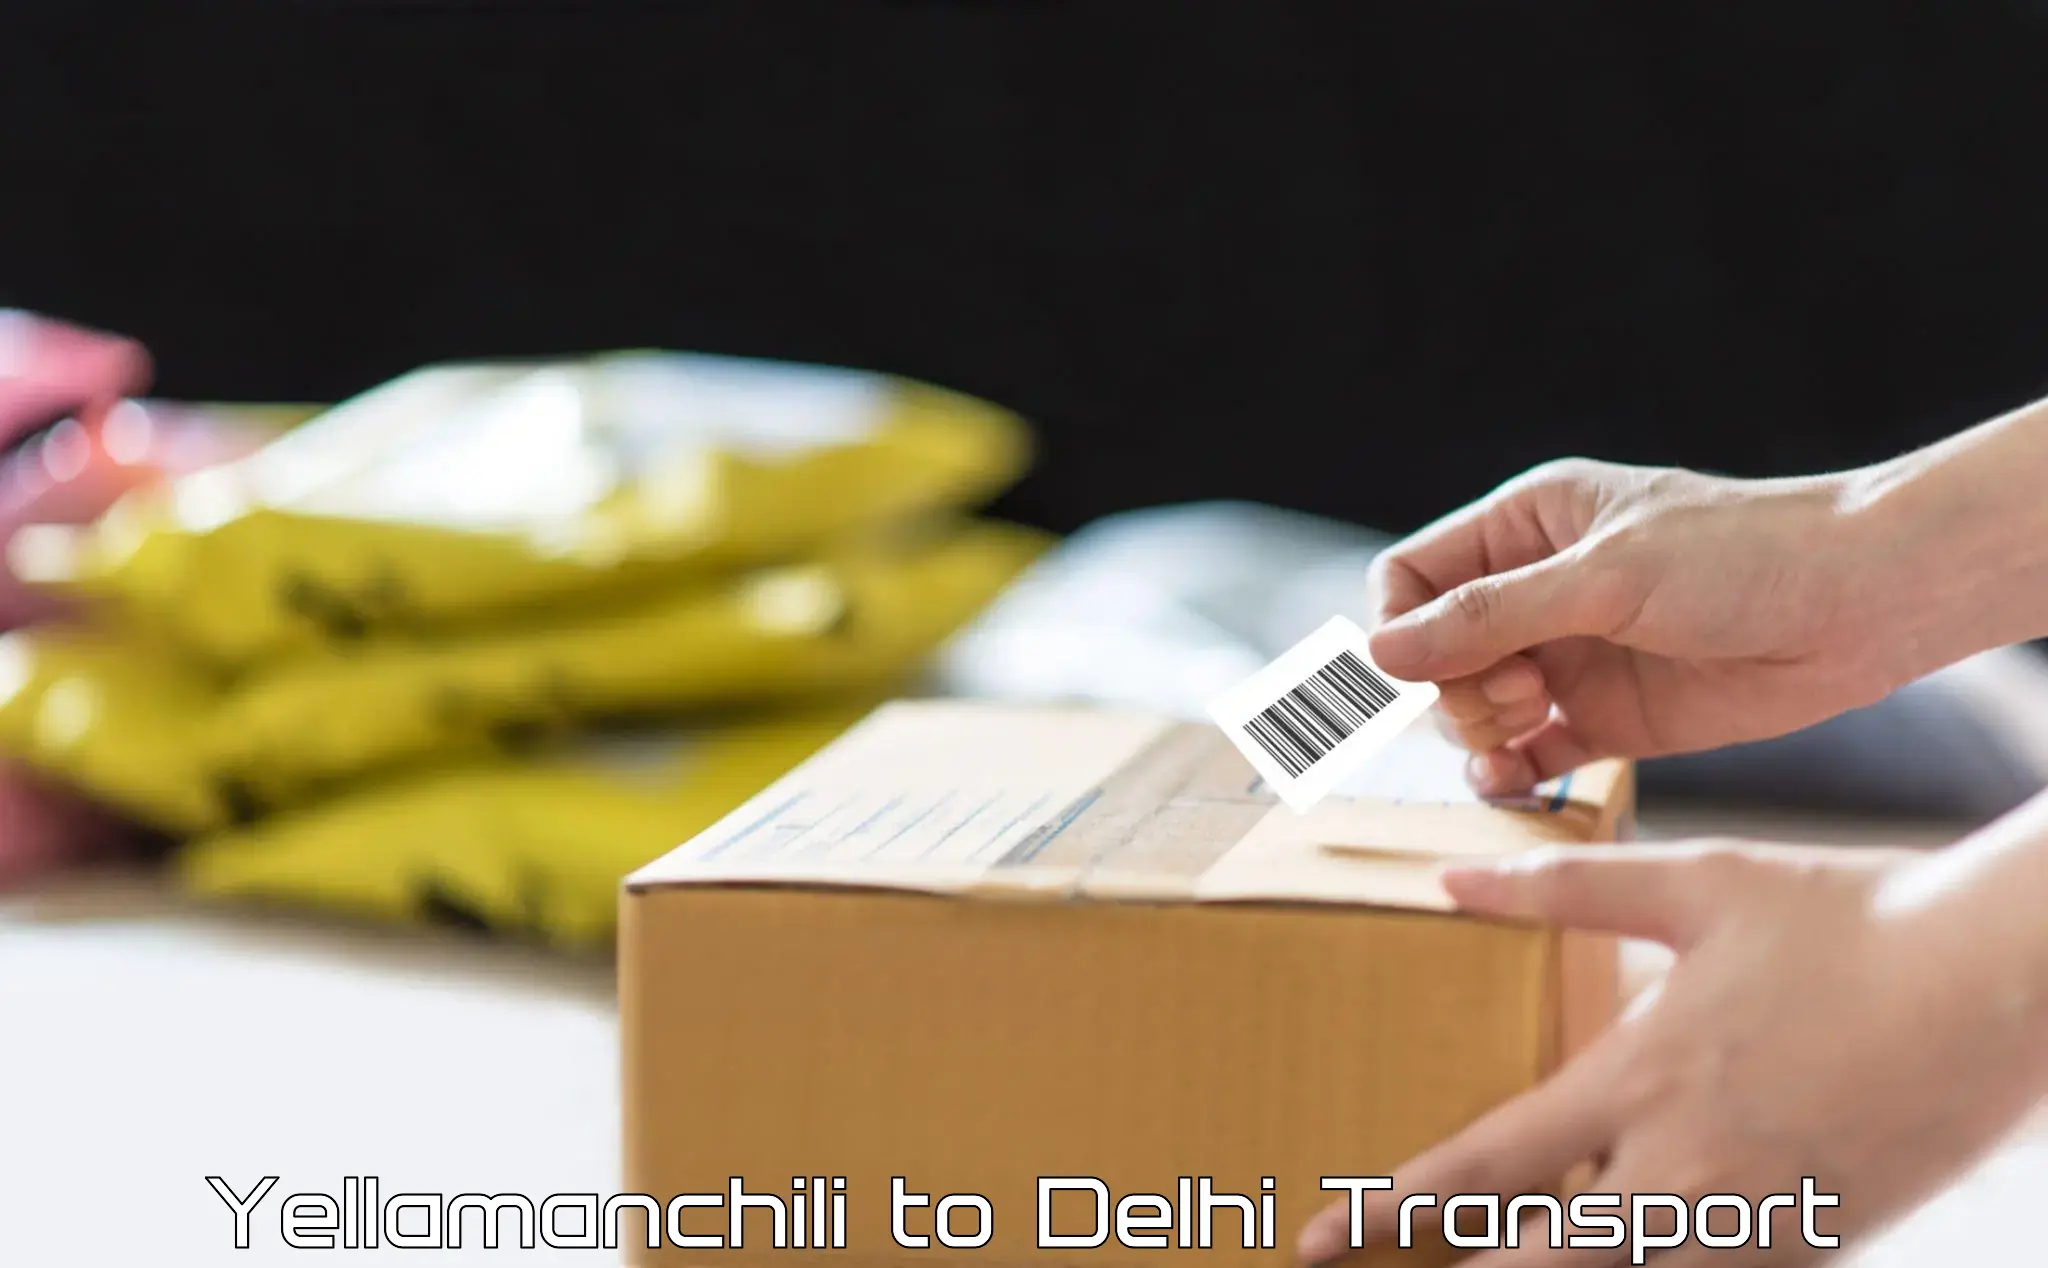 Delivery service Yellamanchili to East Delhi